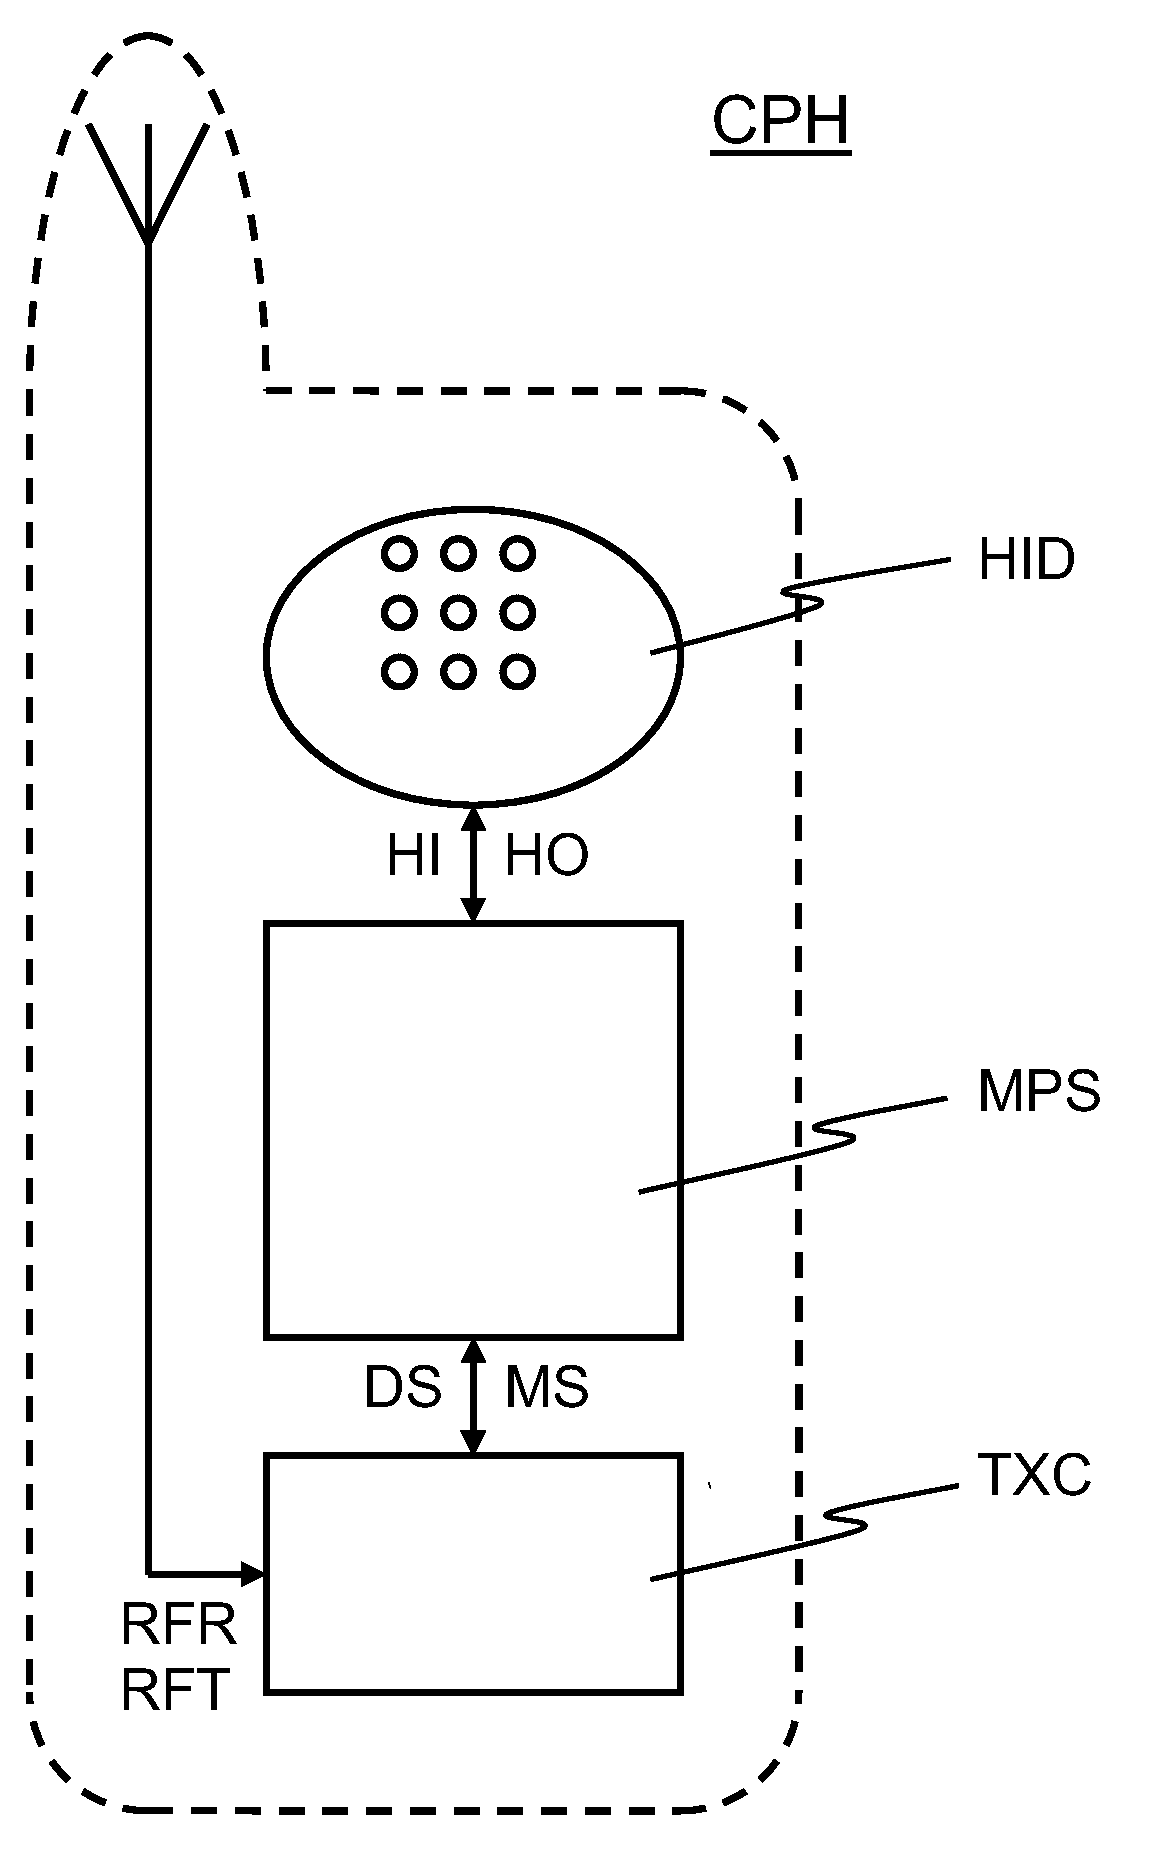 Data processing arrangement comprising a reset facility